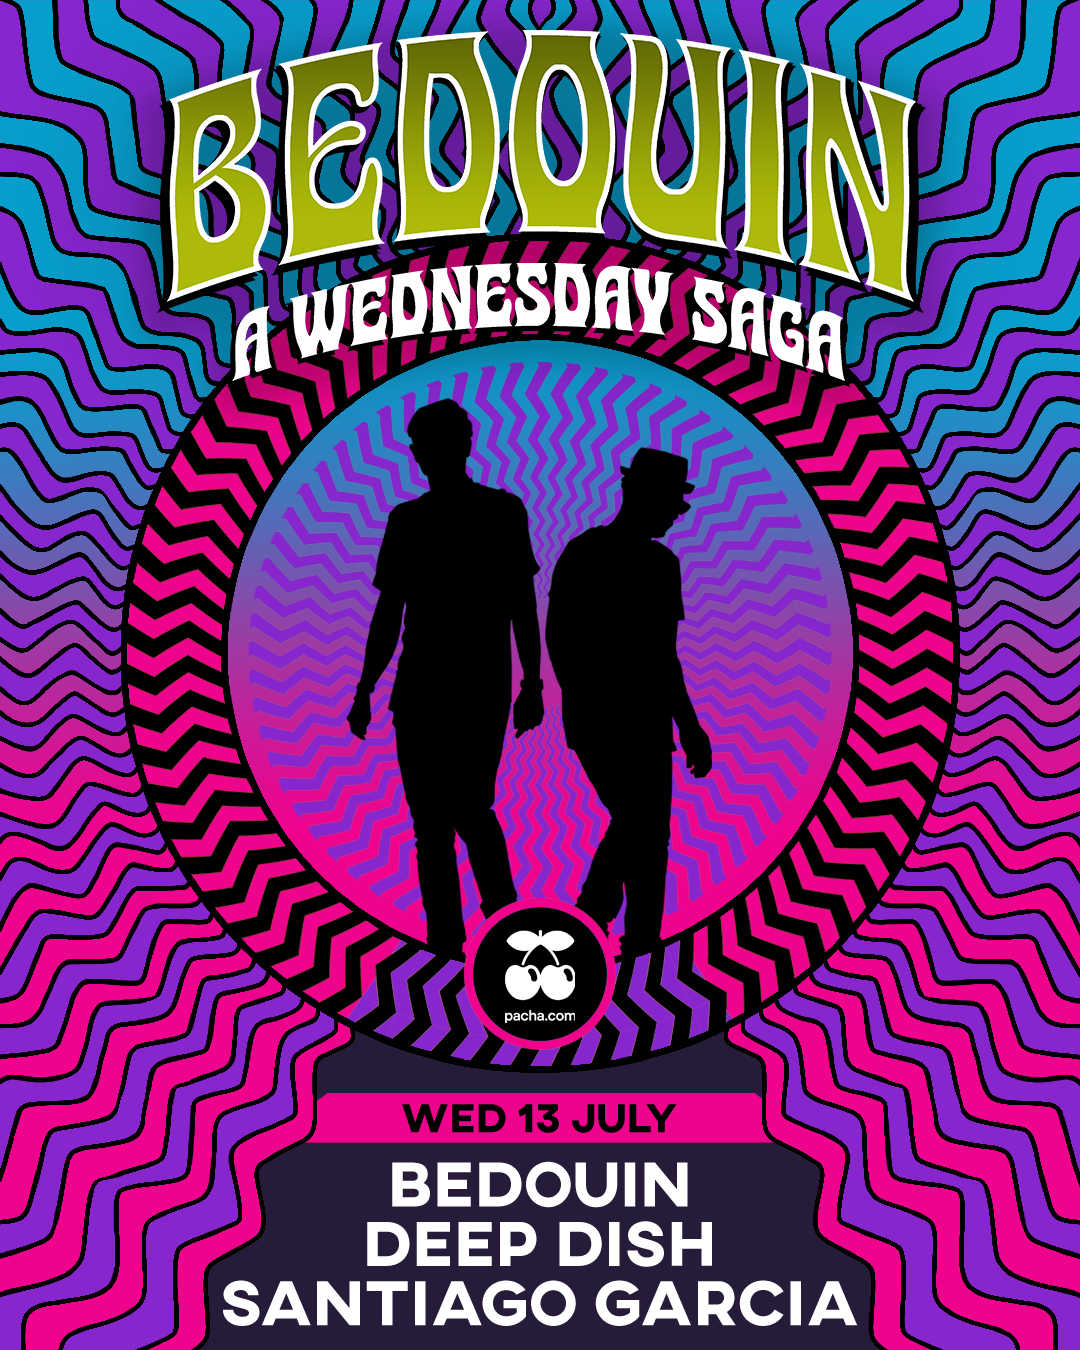 Bedouin: A Wednesday Saga - Página frontal